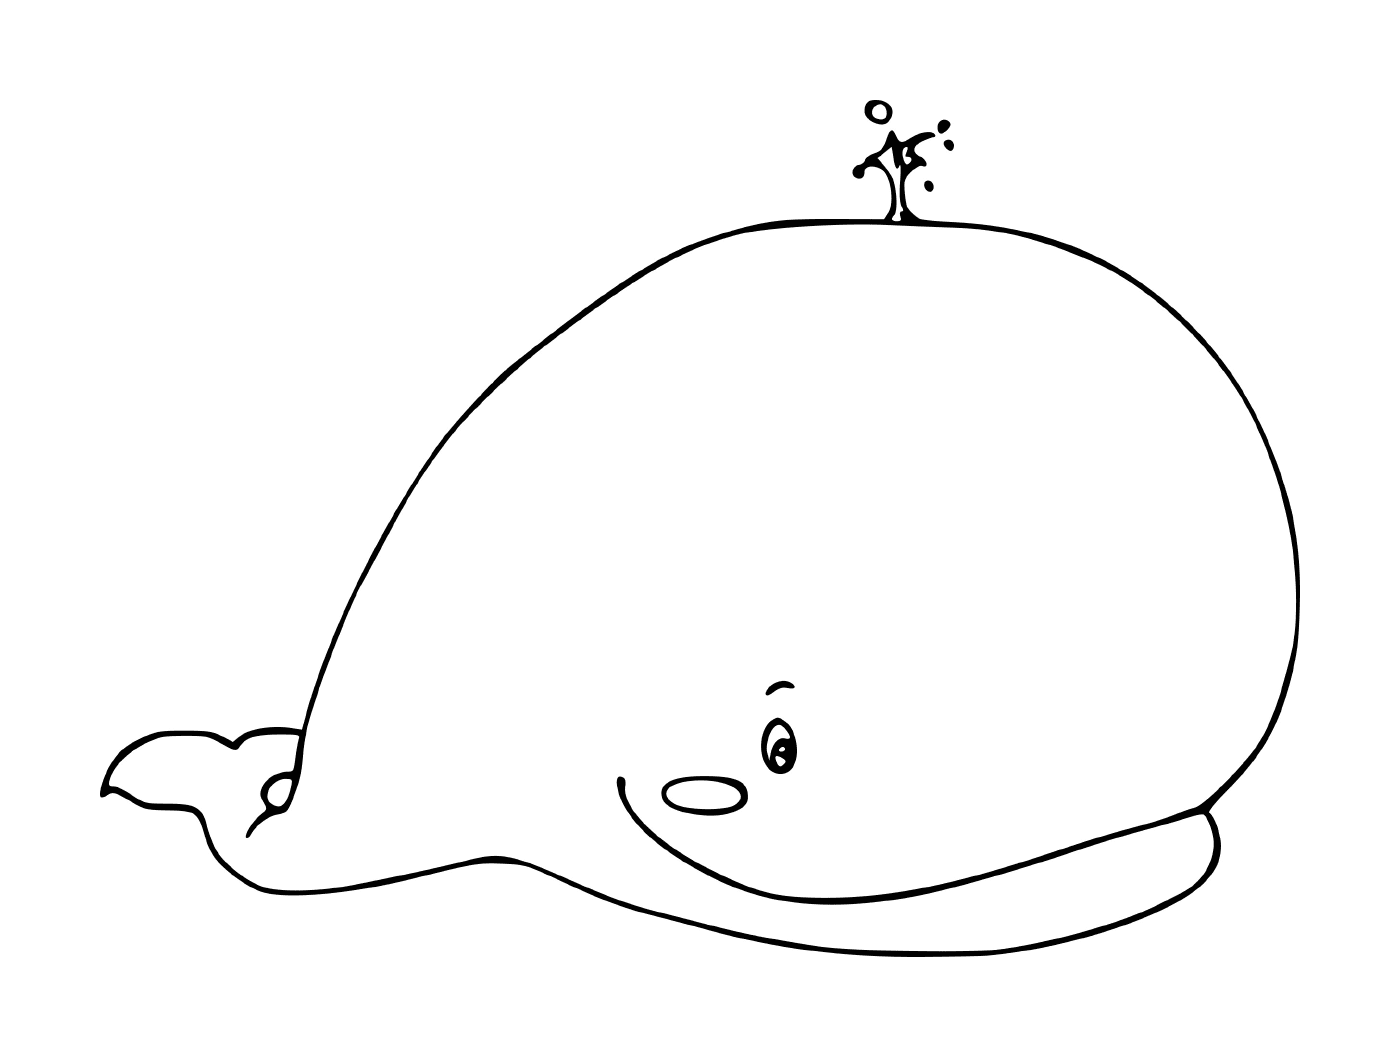  кит с палкой на голове 